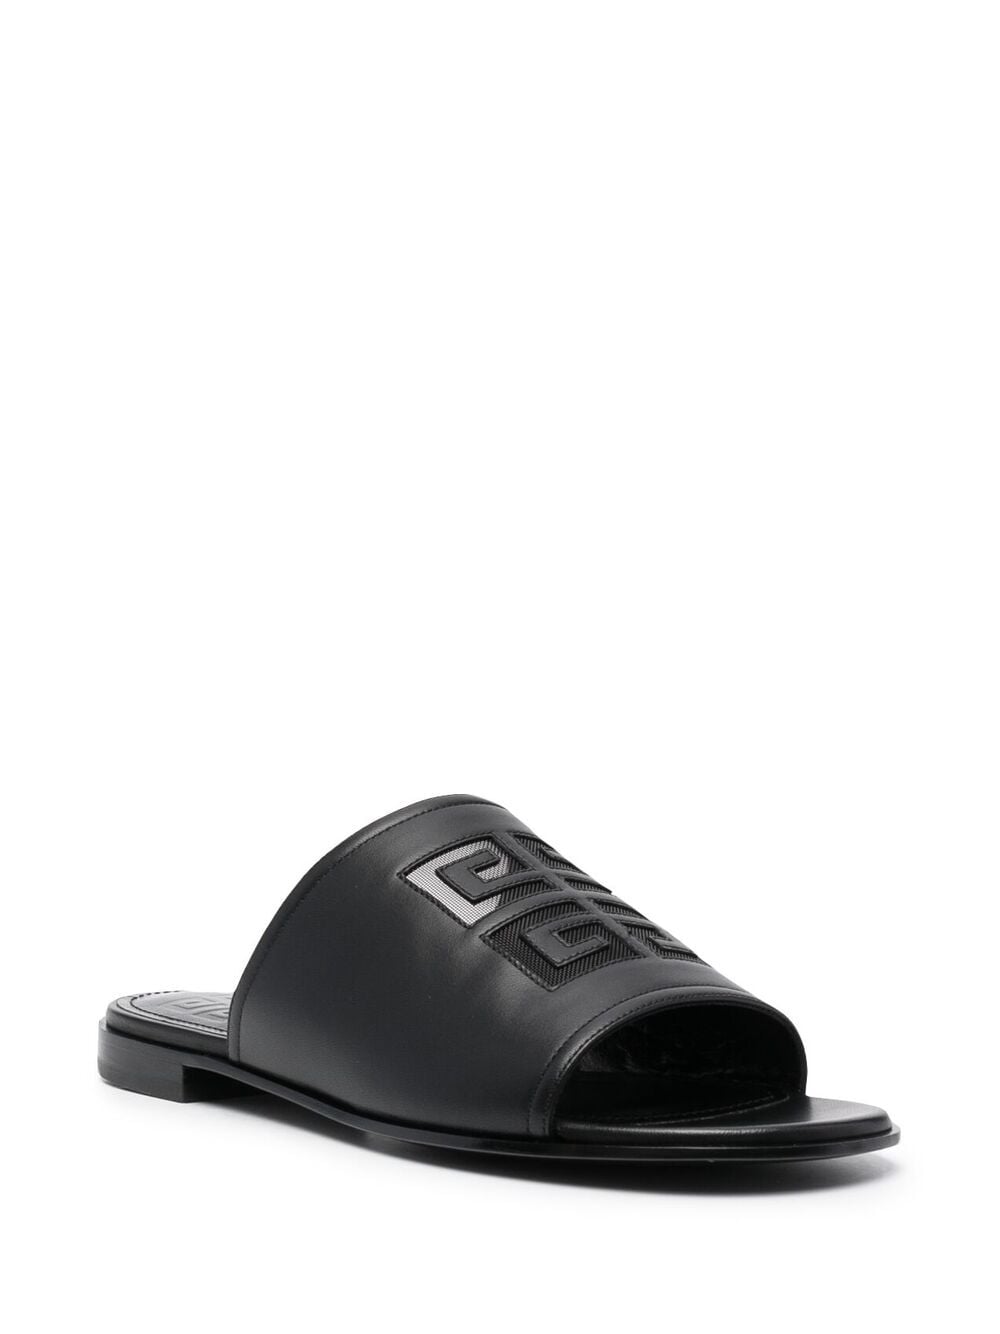 фото Givenchy сандалии с логотипом 4g